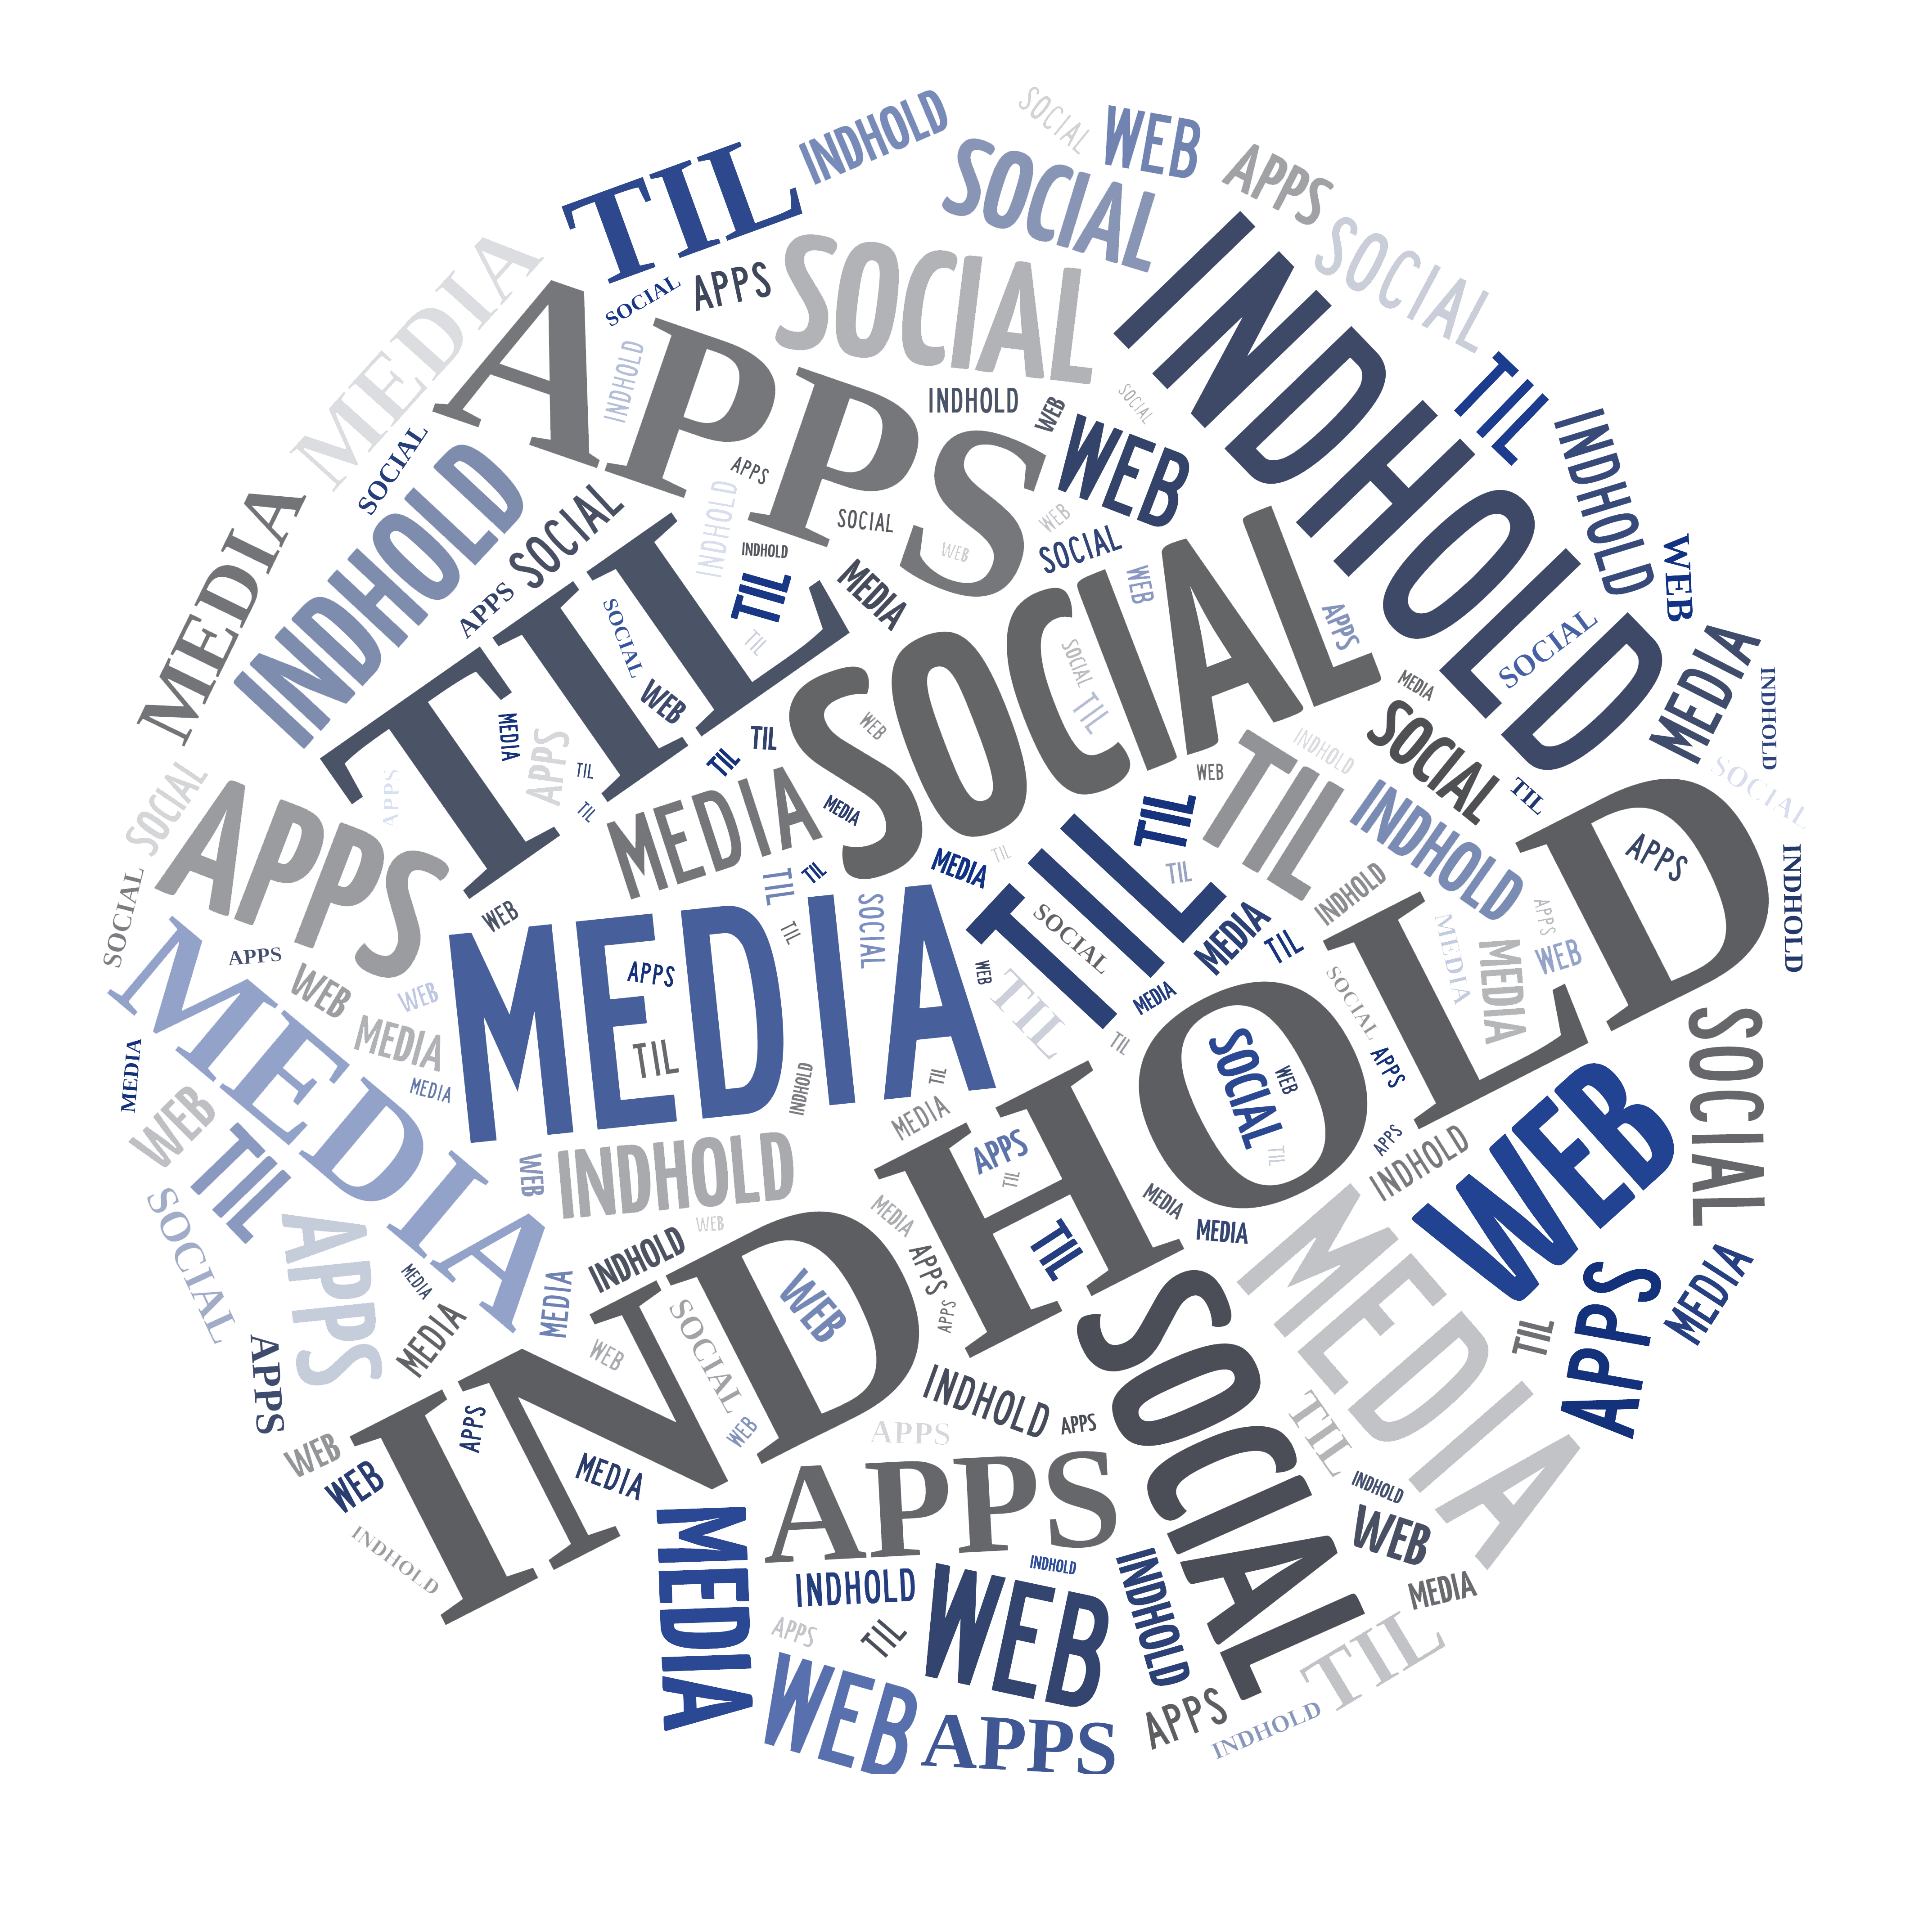 INDHOLD TIL SOCIAL MEDIA, WEB & APPS